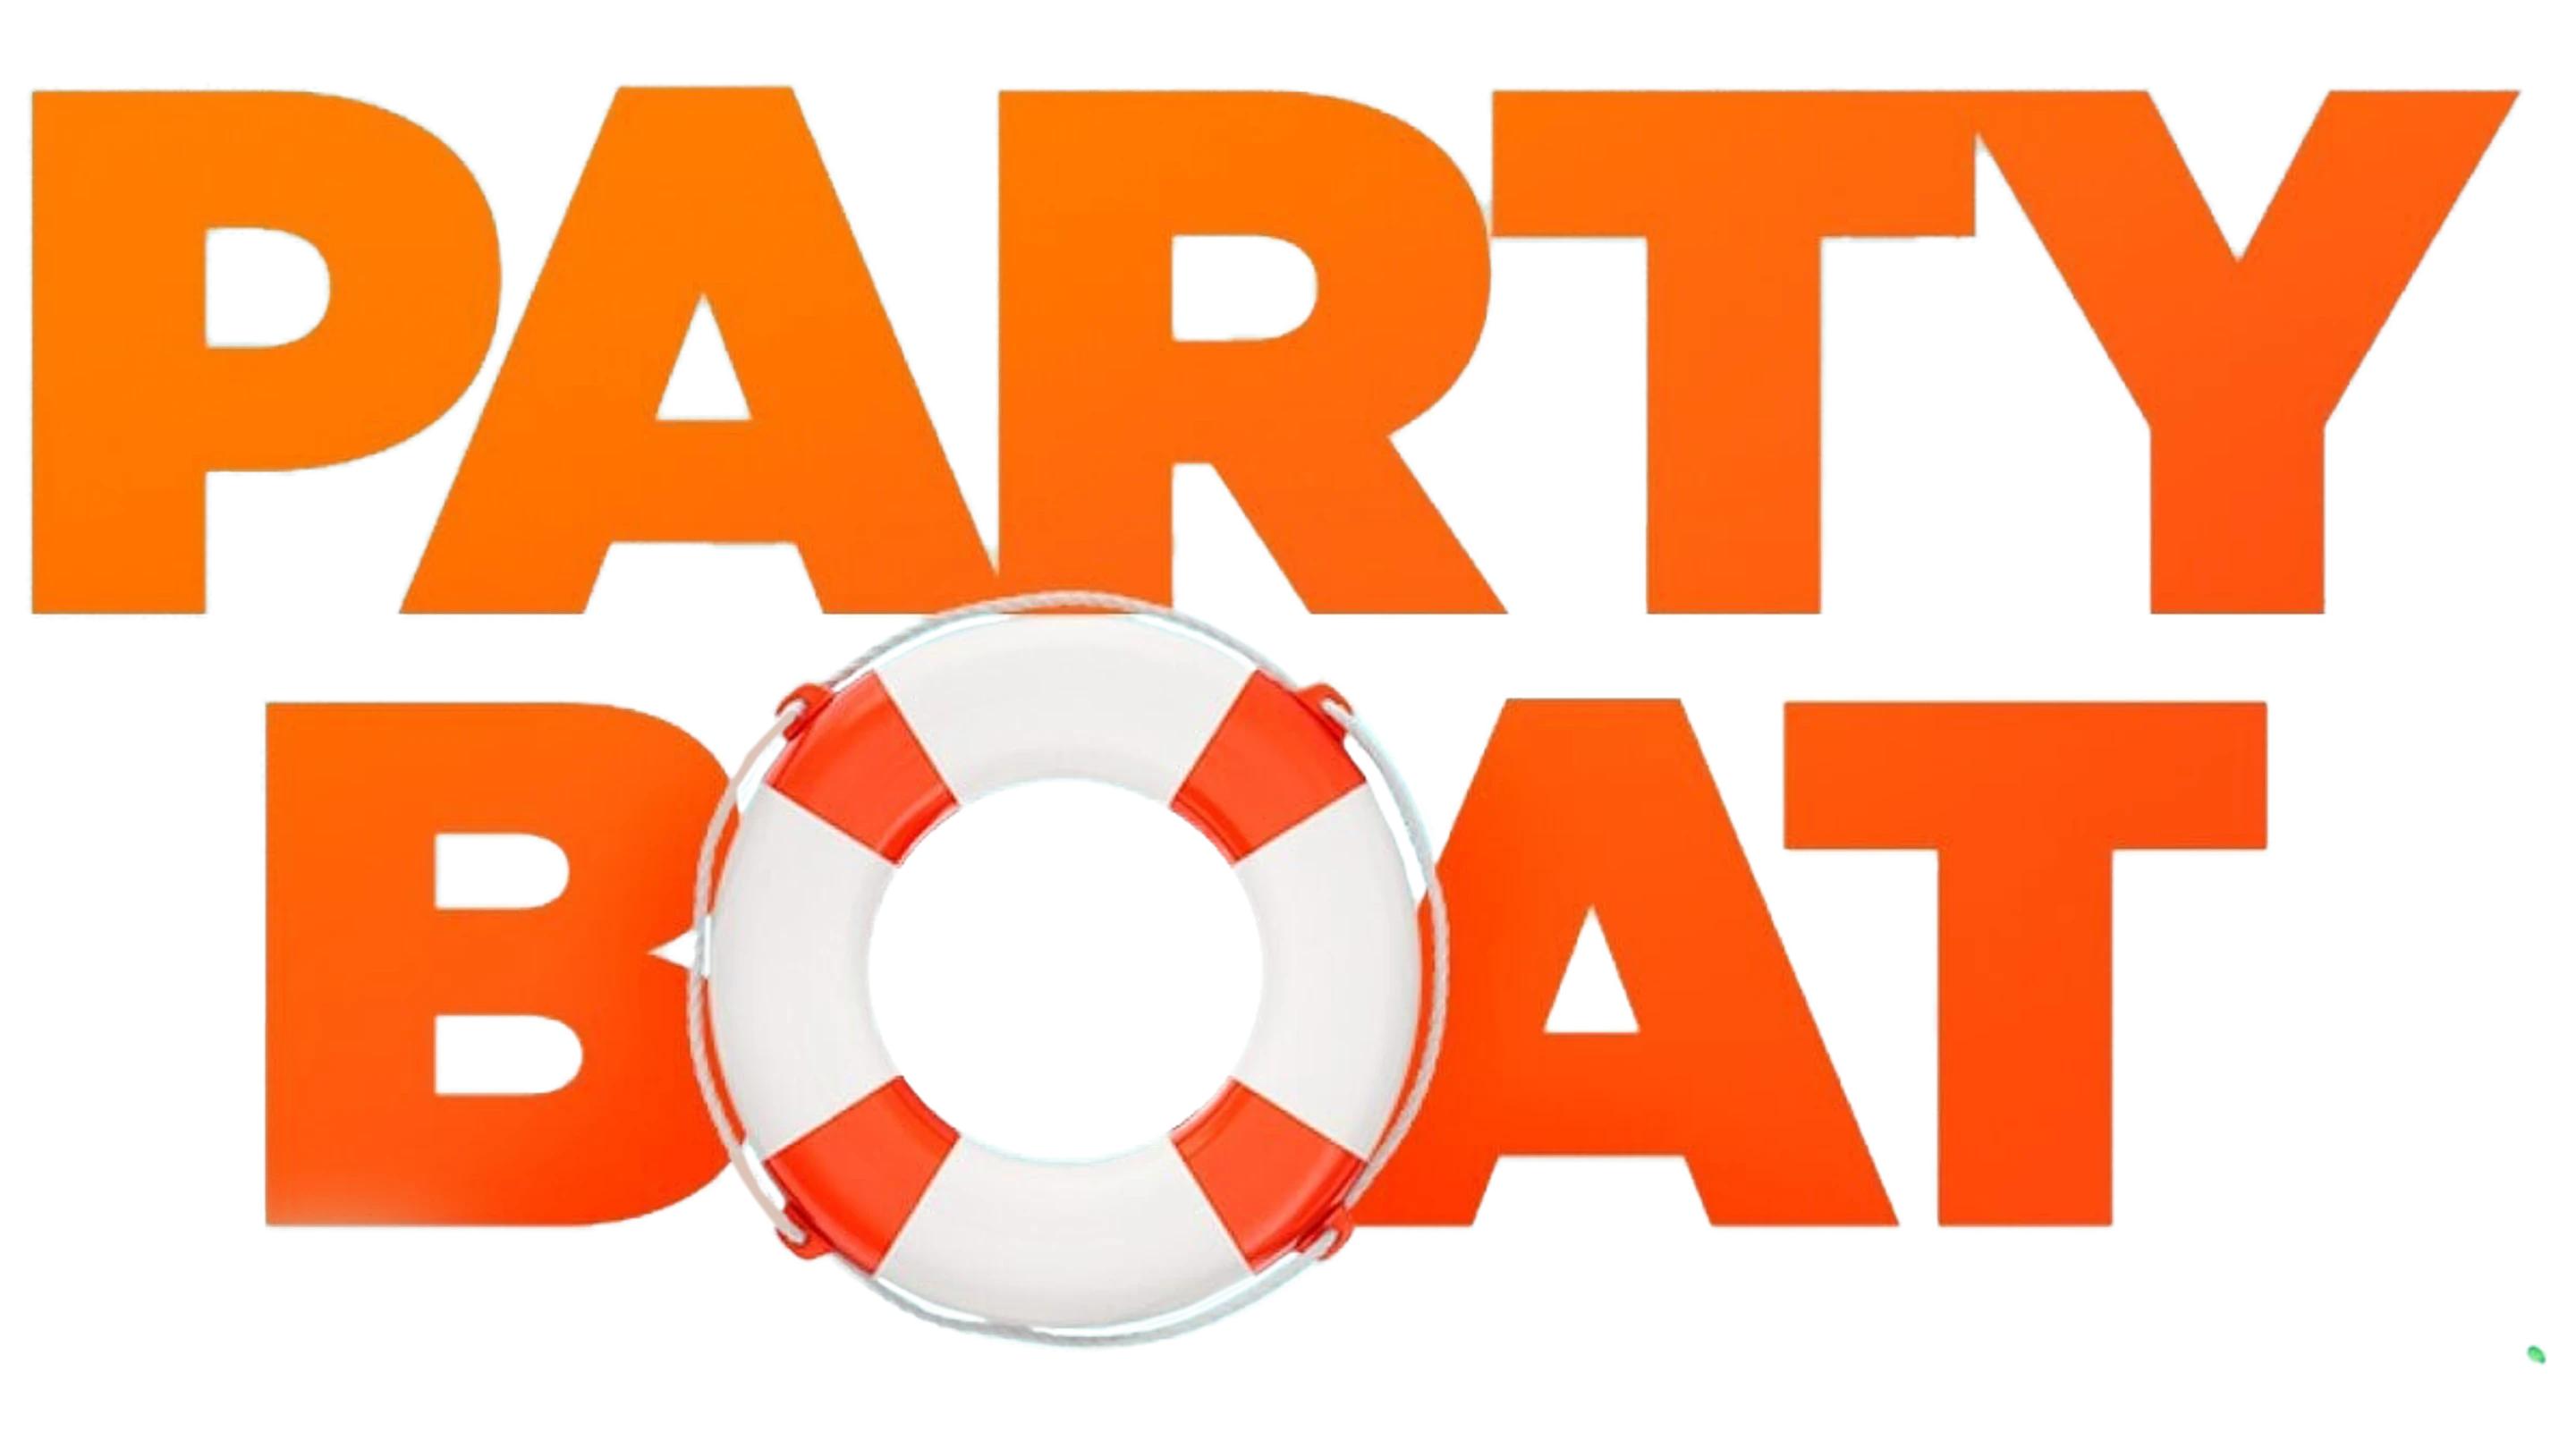 Party Boat - Un compleanno alla deriva